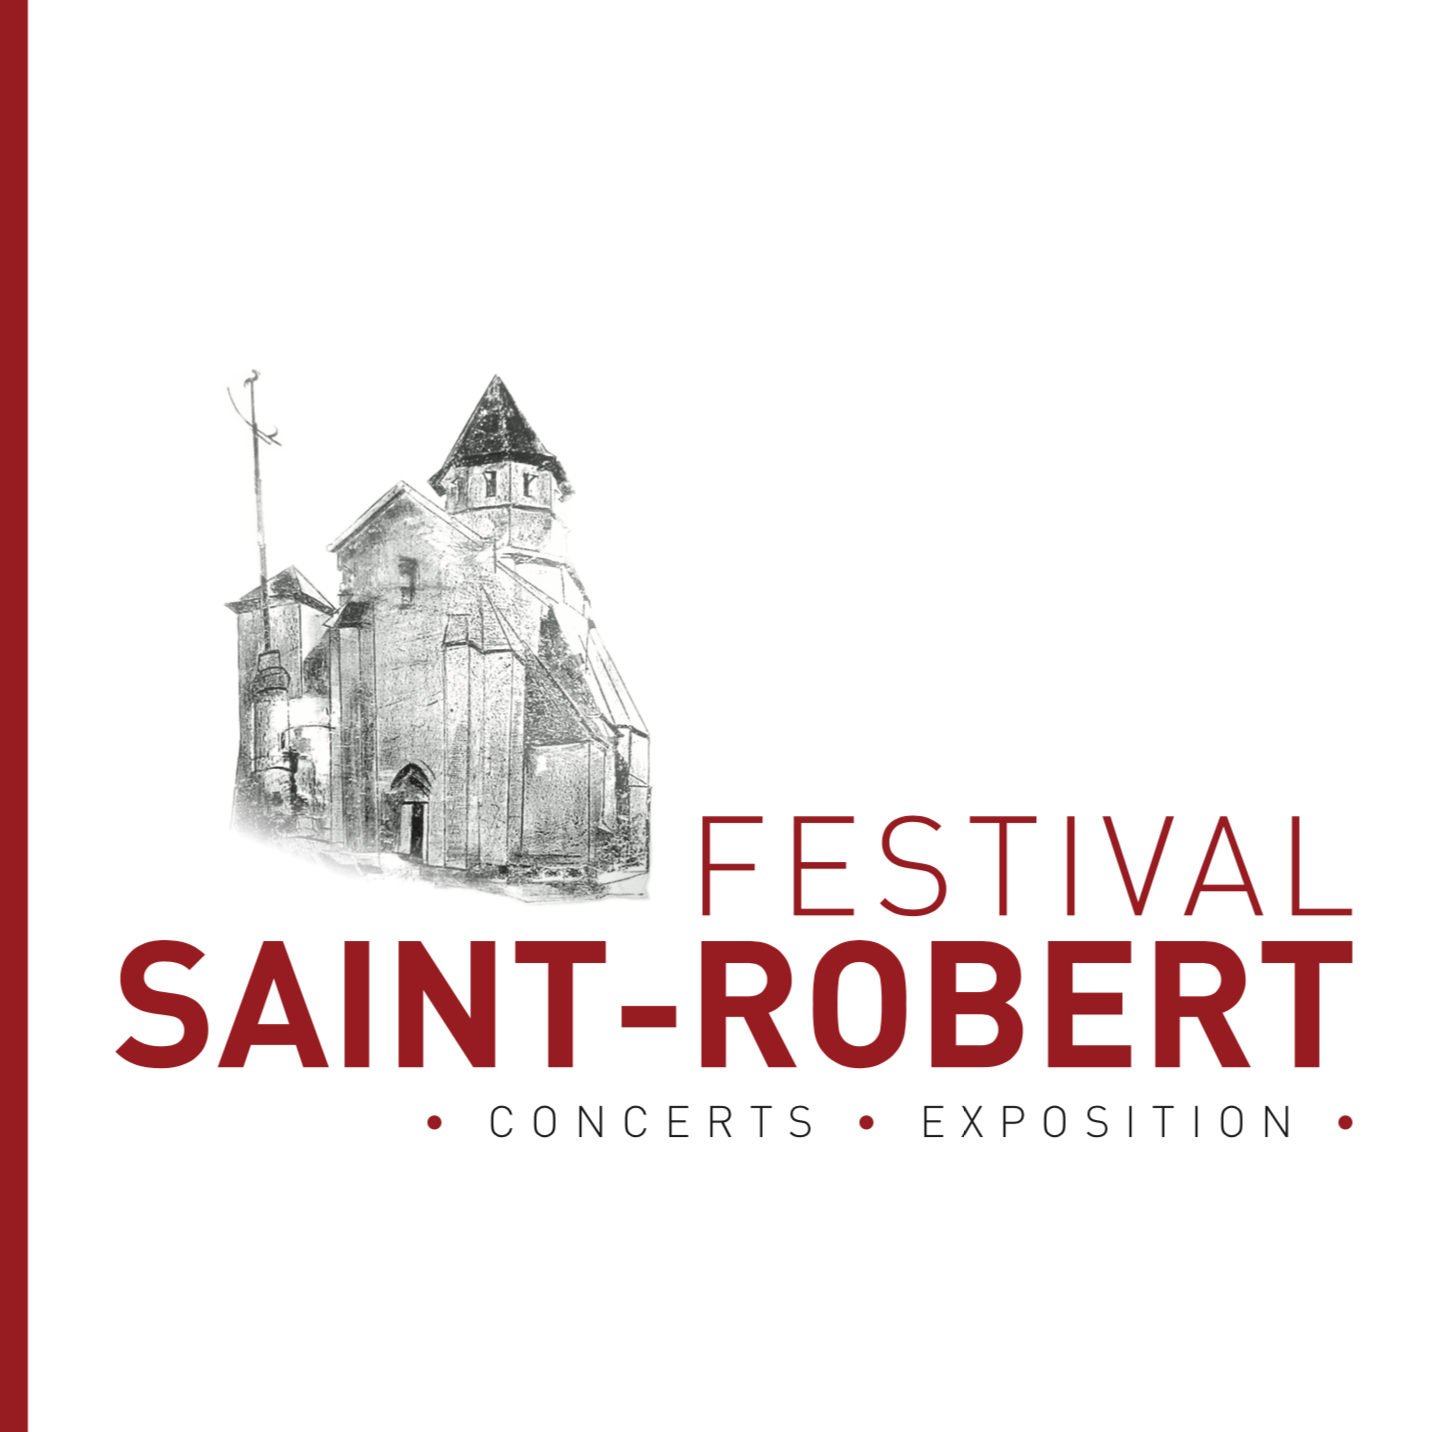 Festival de Saint-Robert